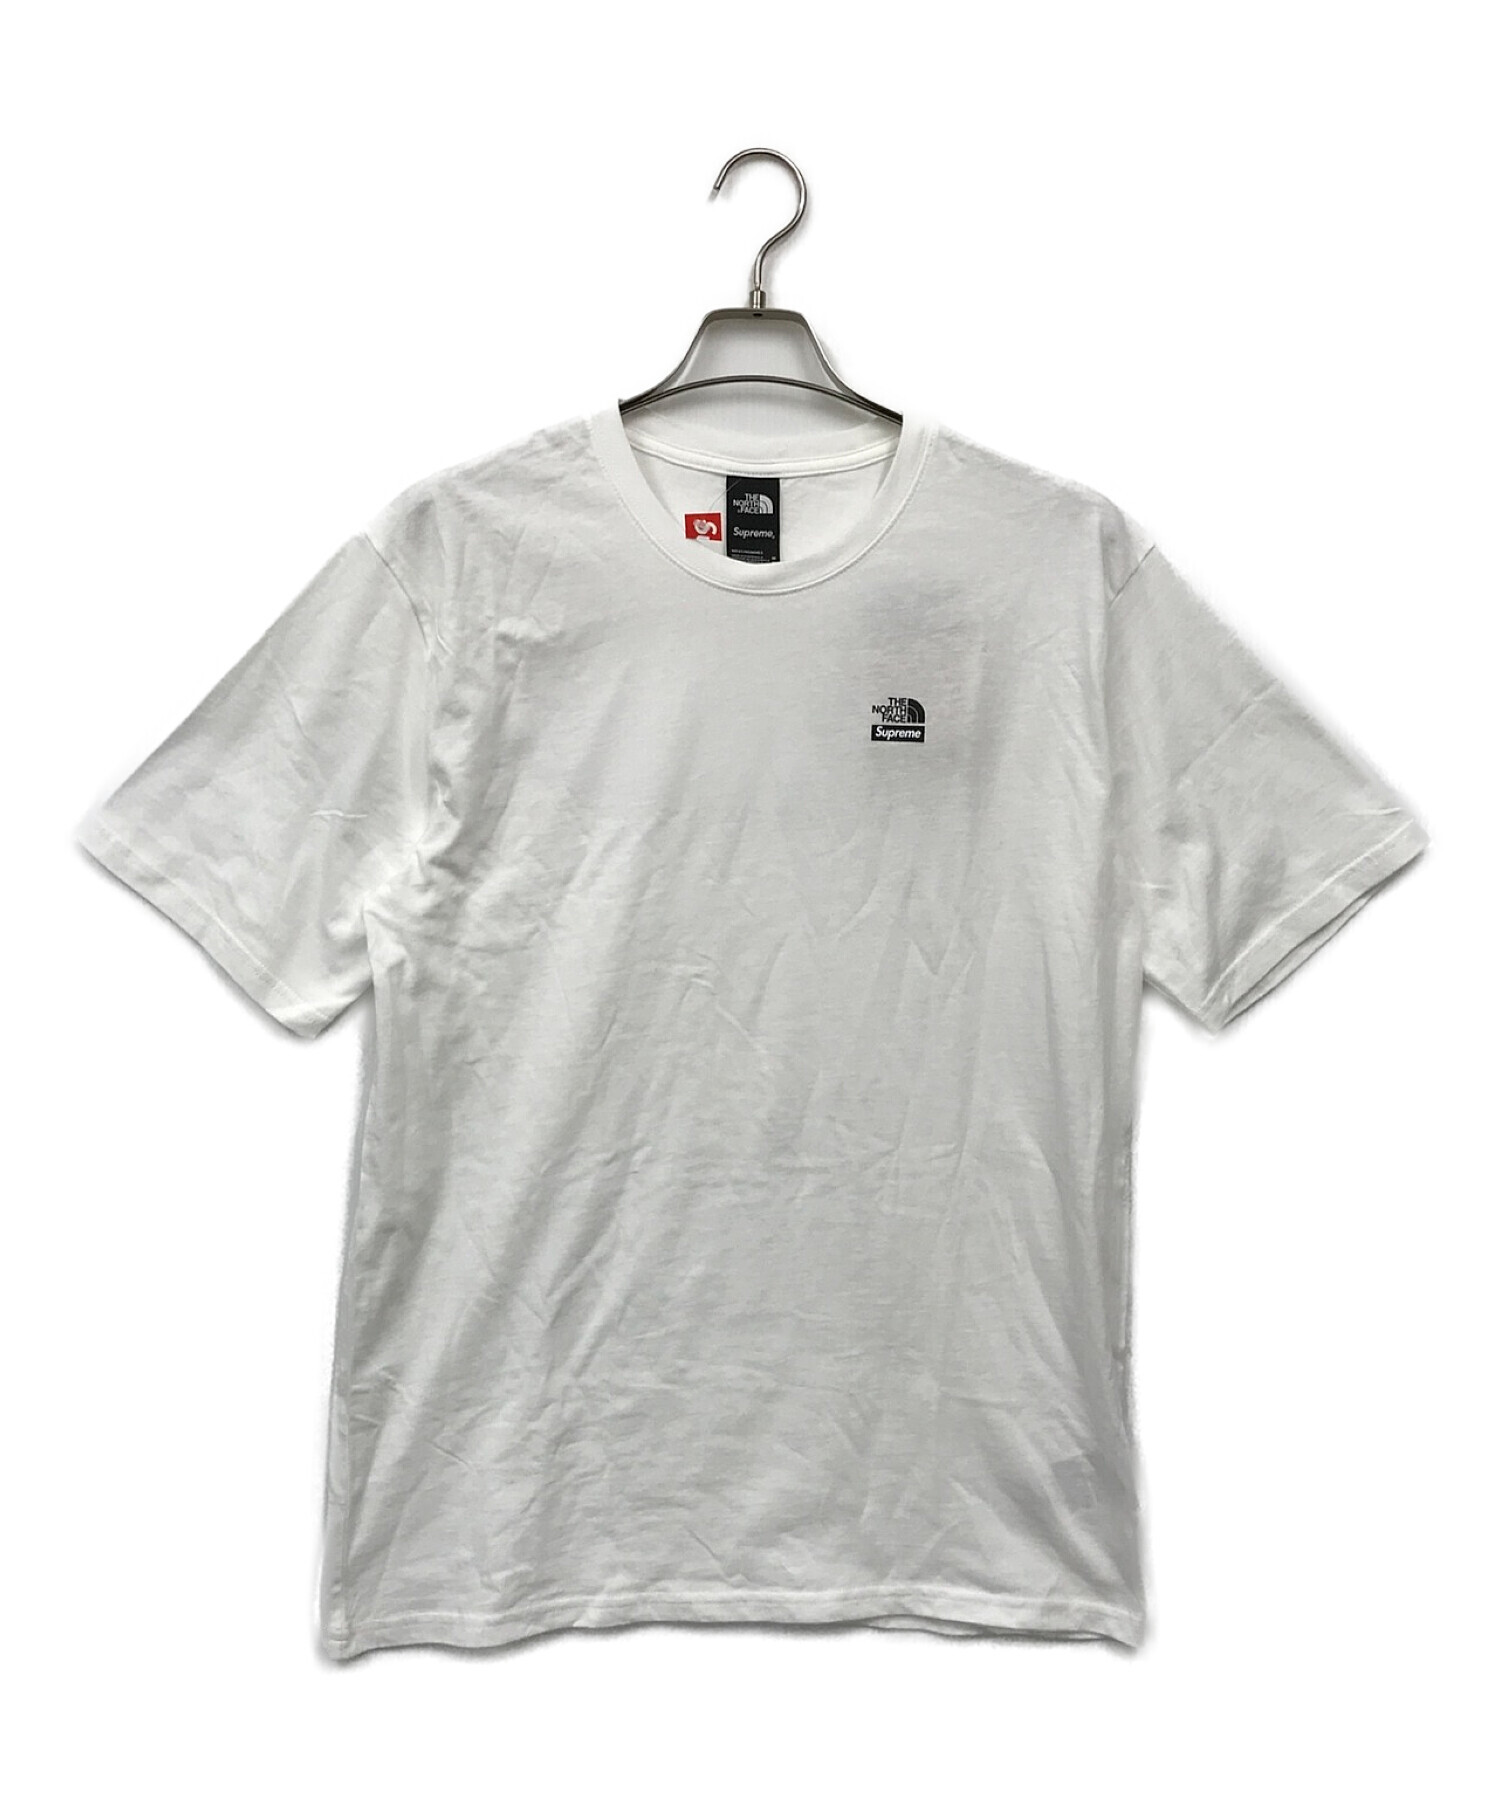 SUPREME×THE NORTH FACE (シュプリーム × ザノースフェイス) Tシャツ ホワイト サイズ:M 未使用品